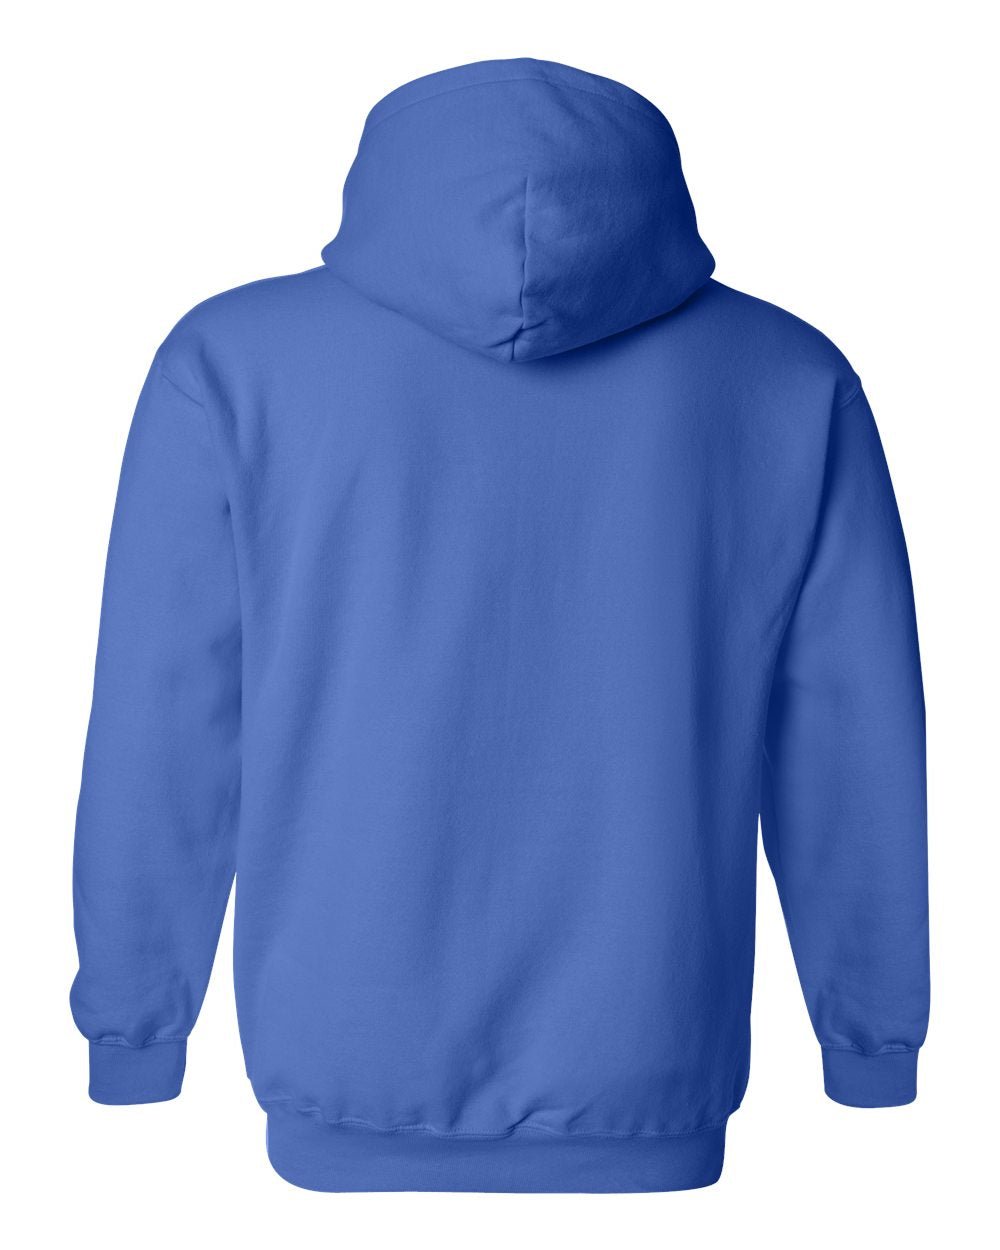 Gildan Heavy Blend Hoodie Men Pullover Black Plain Hooded Sweatshirt 18500